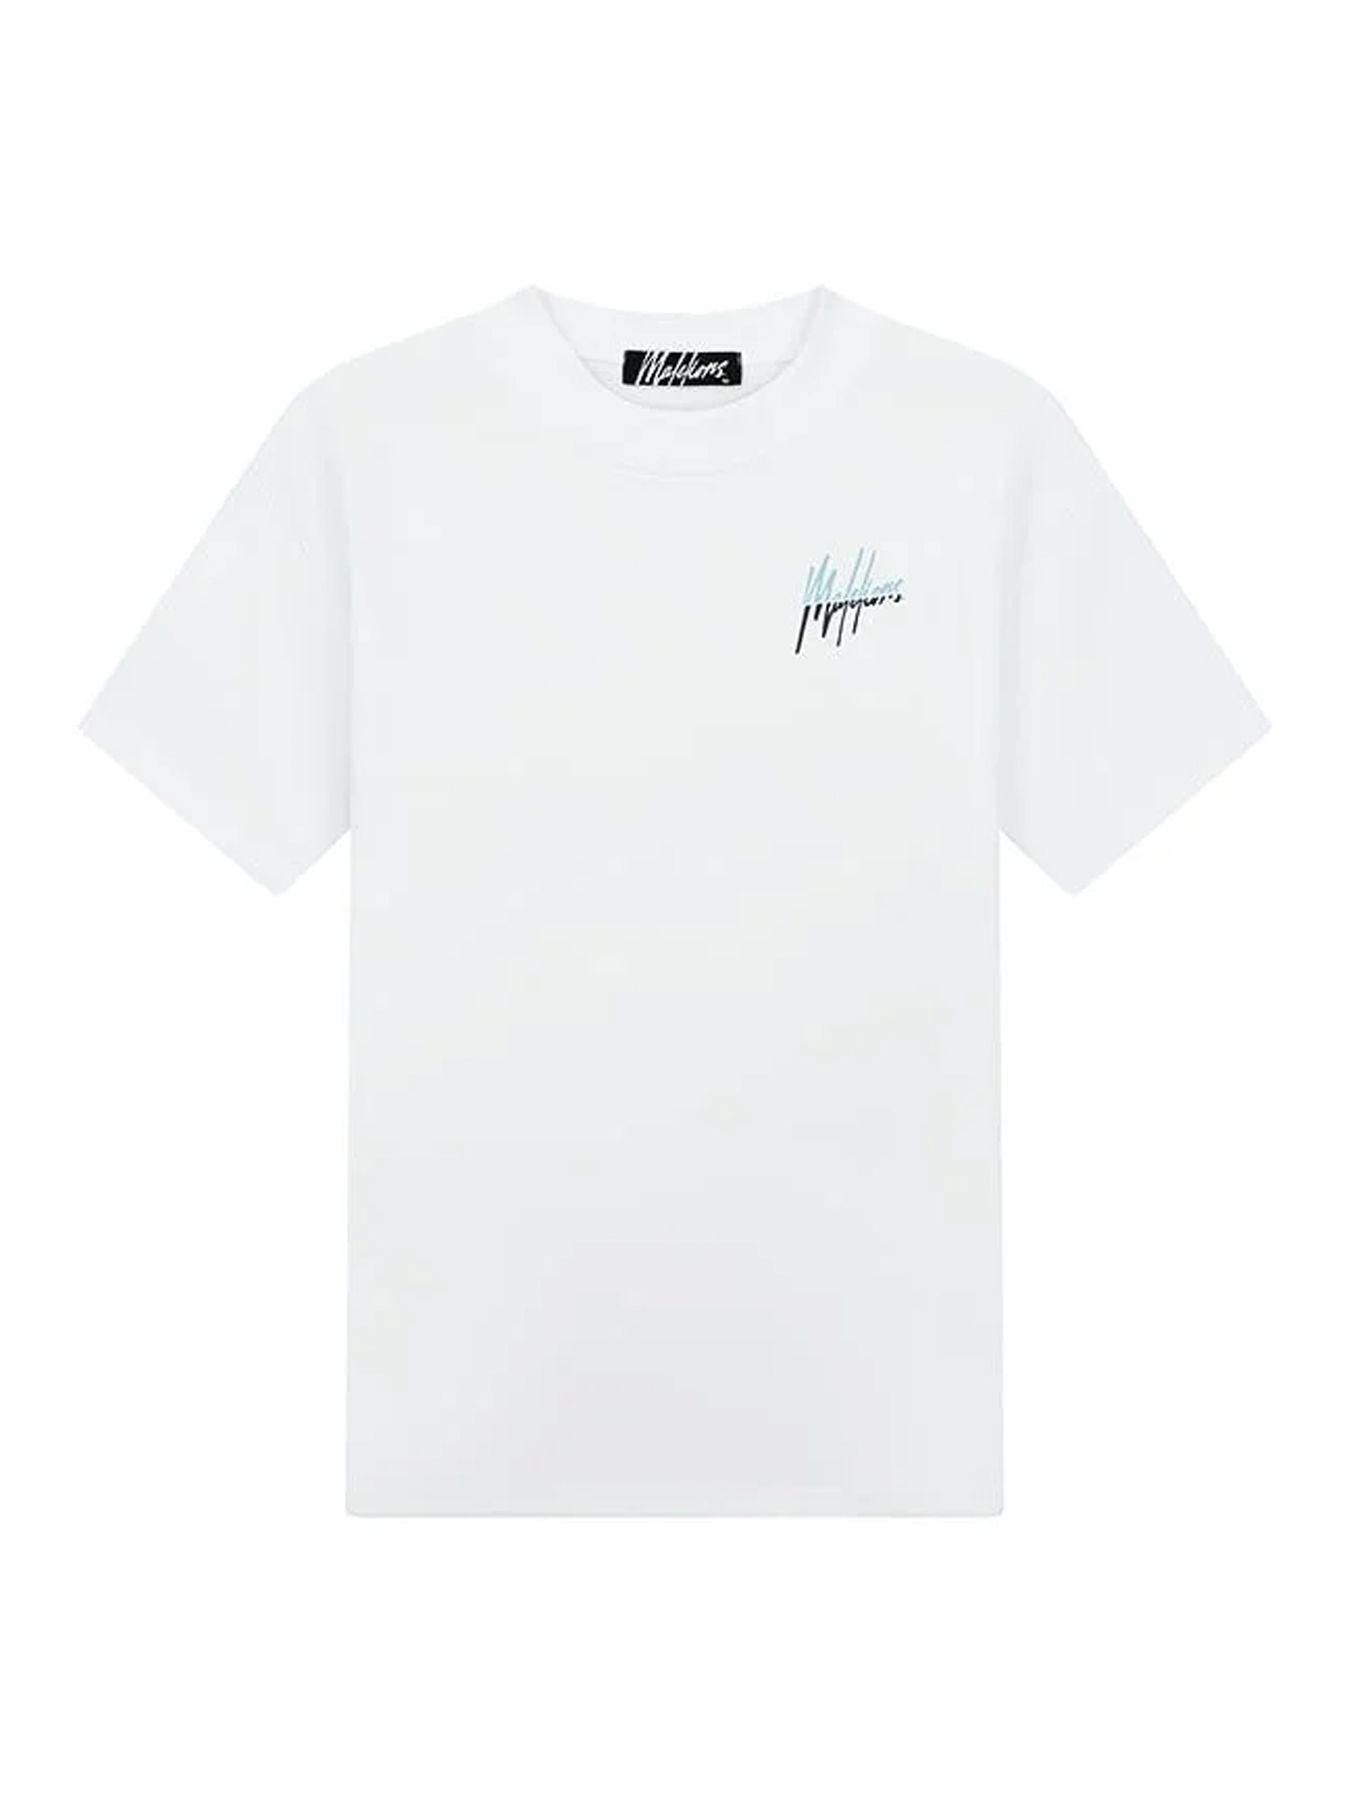 Malelions Men split T-shirt White/Light Blue 00109023-971